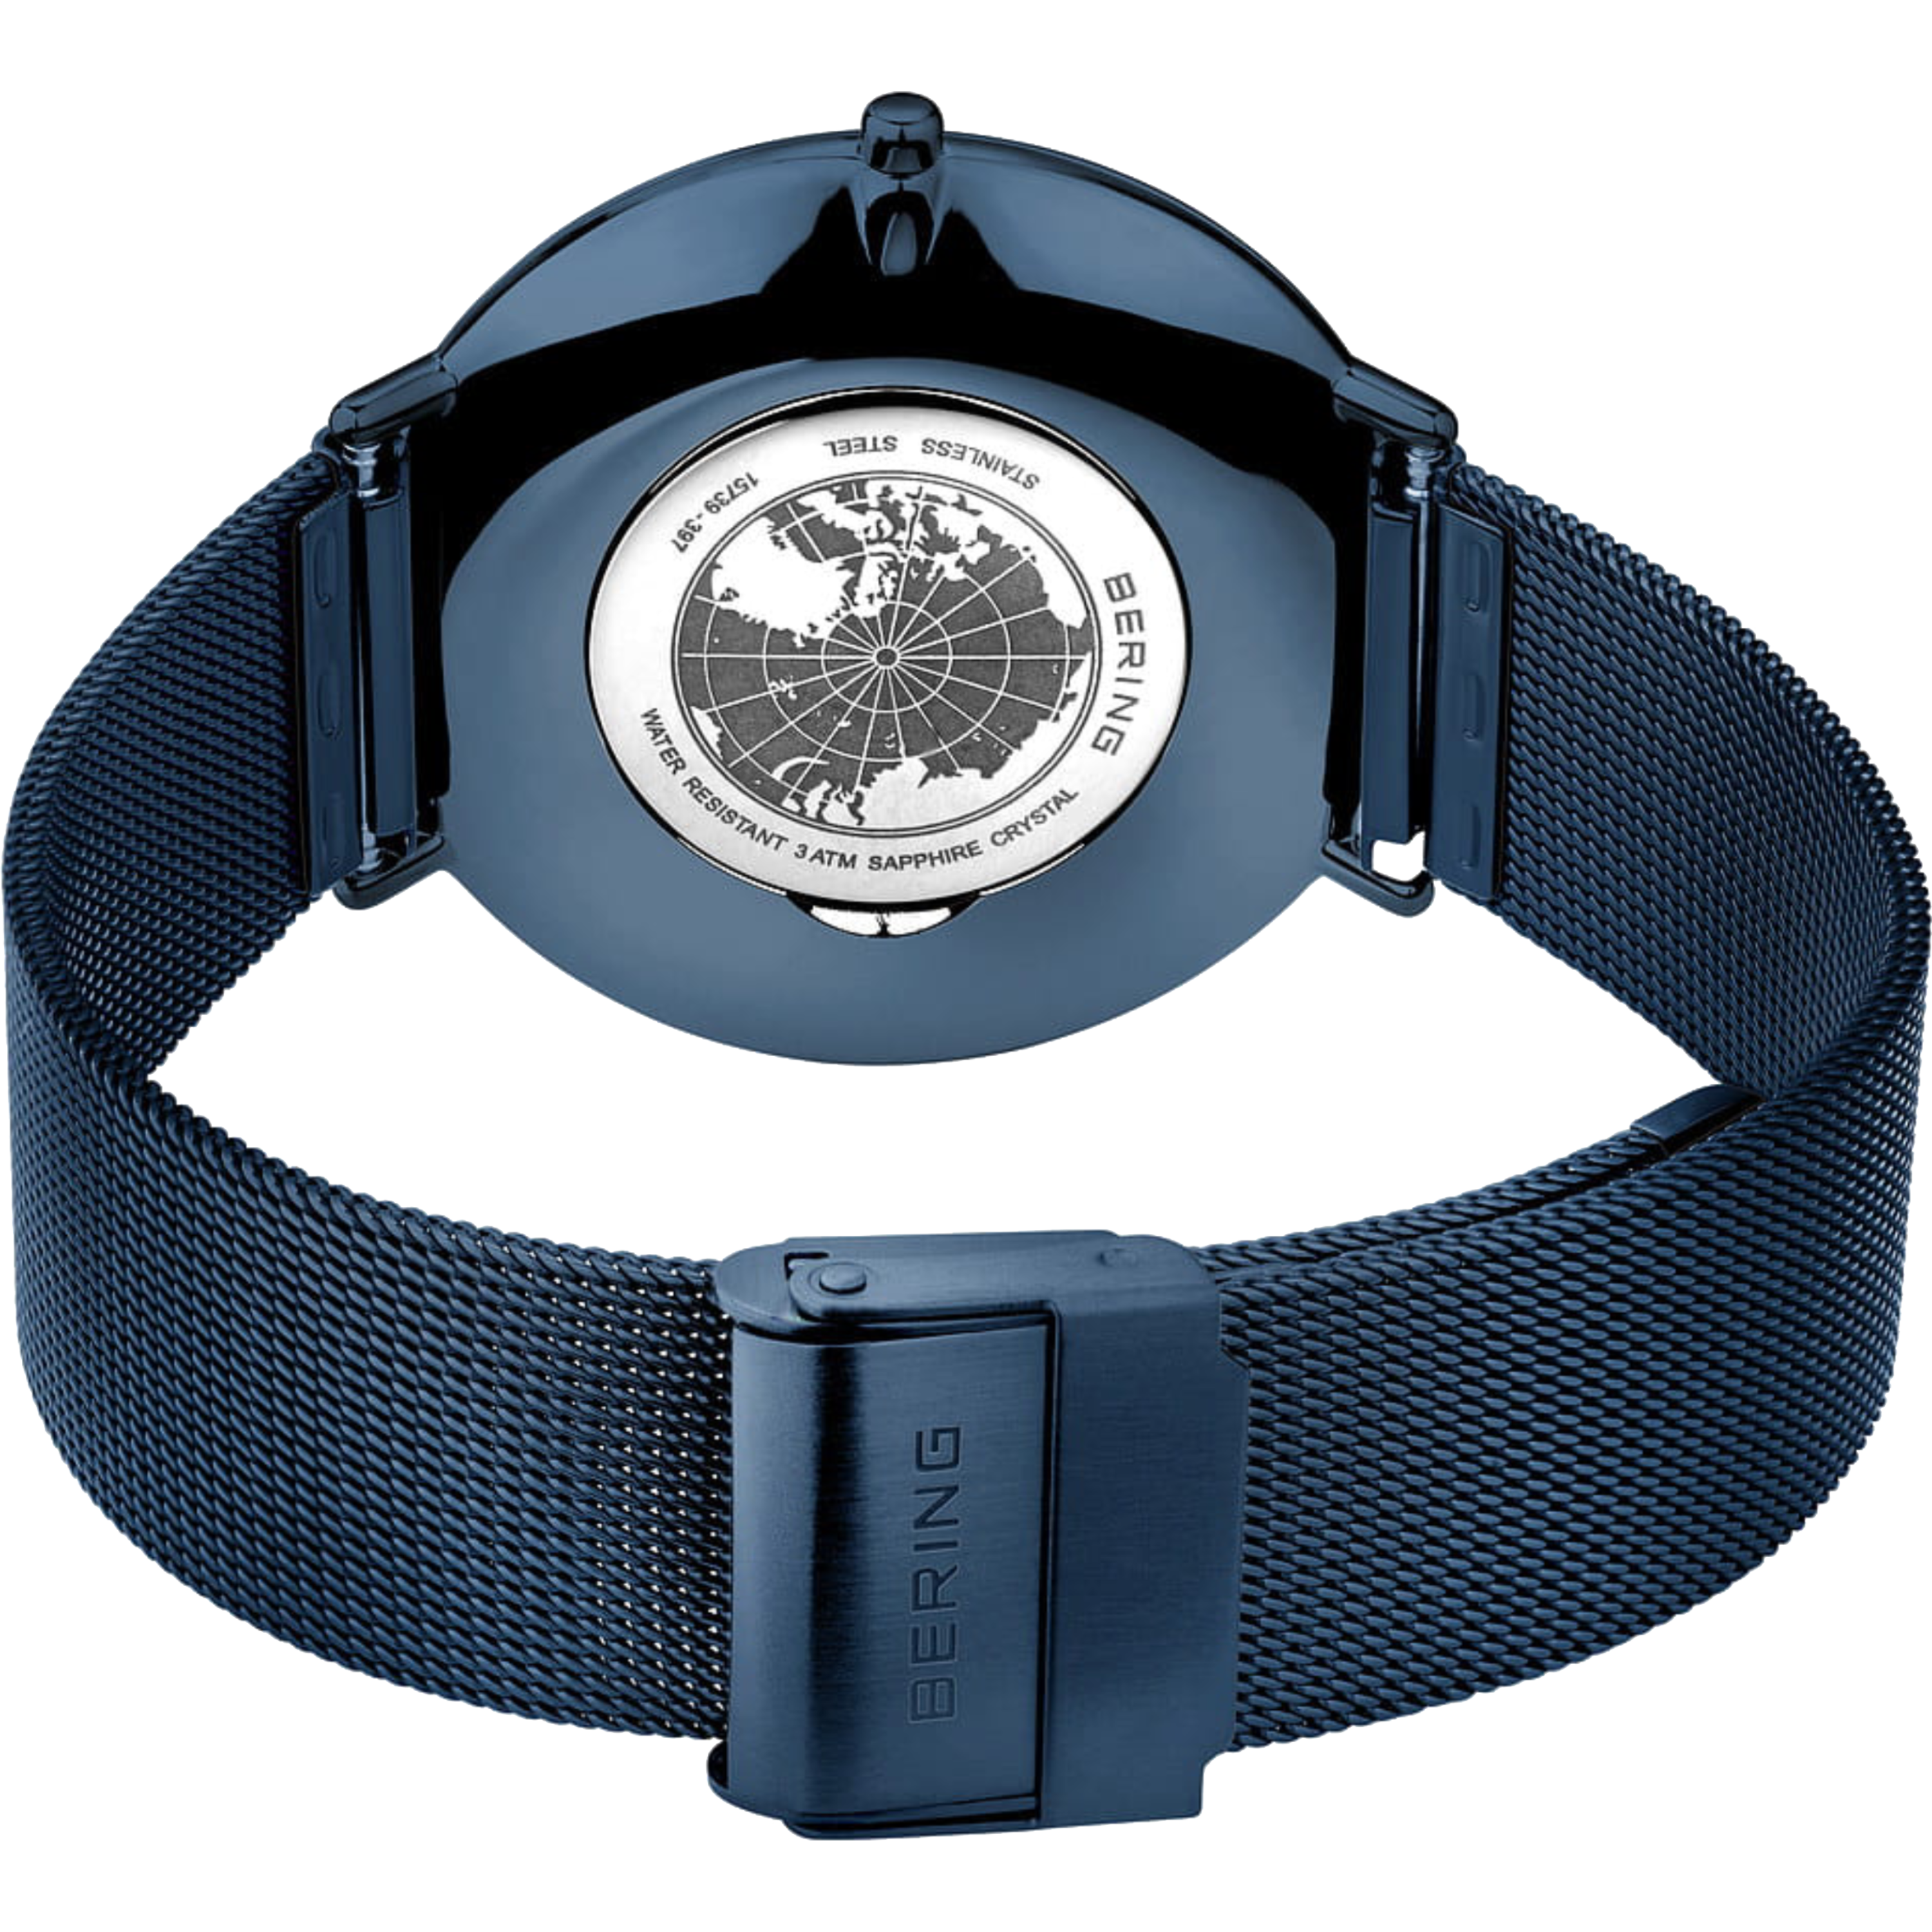 שעון יד יוניסקס Bering 15739-397 39mm צבע כחול - אחריות לשנתיים